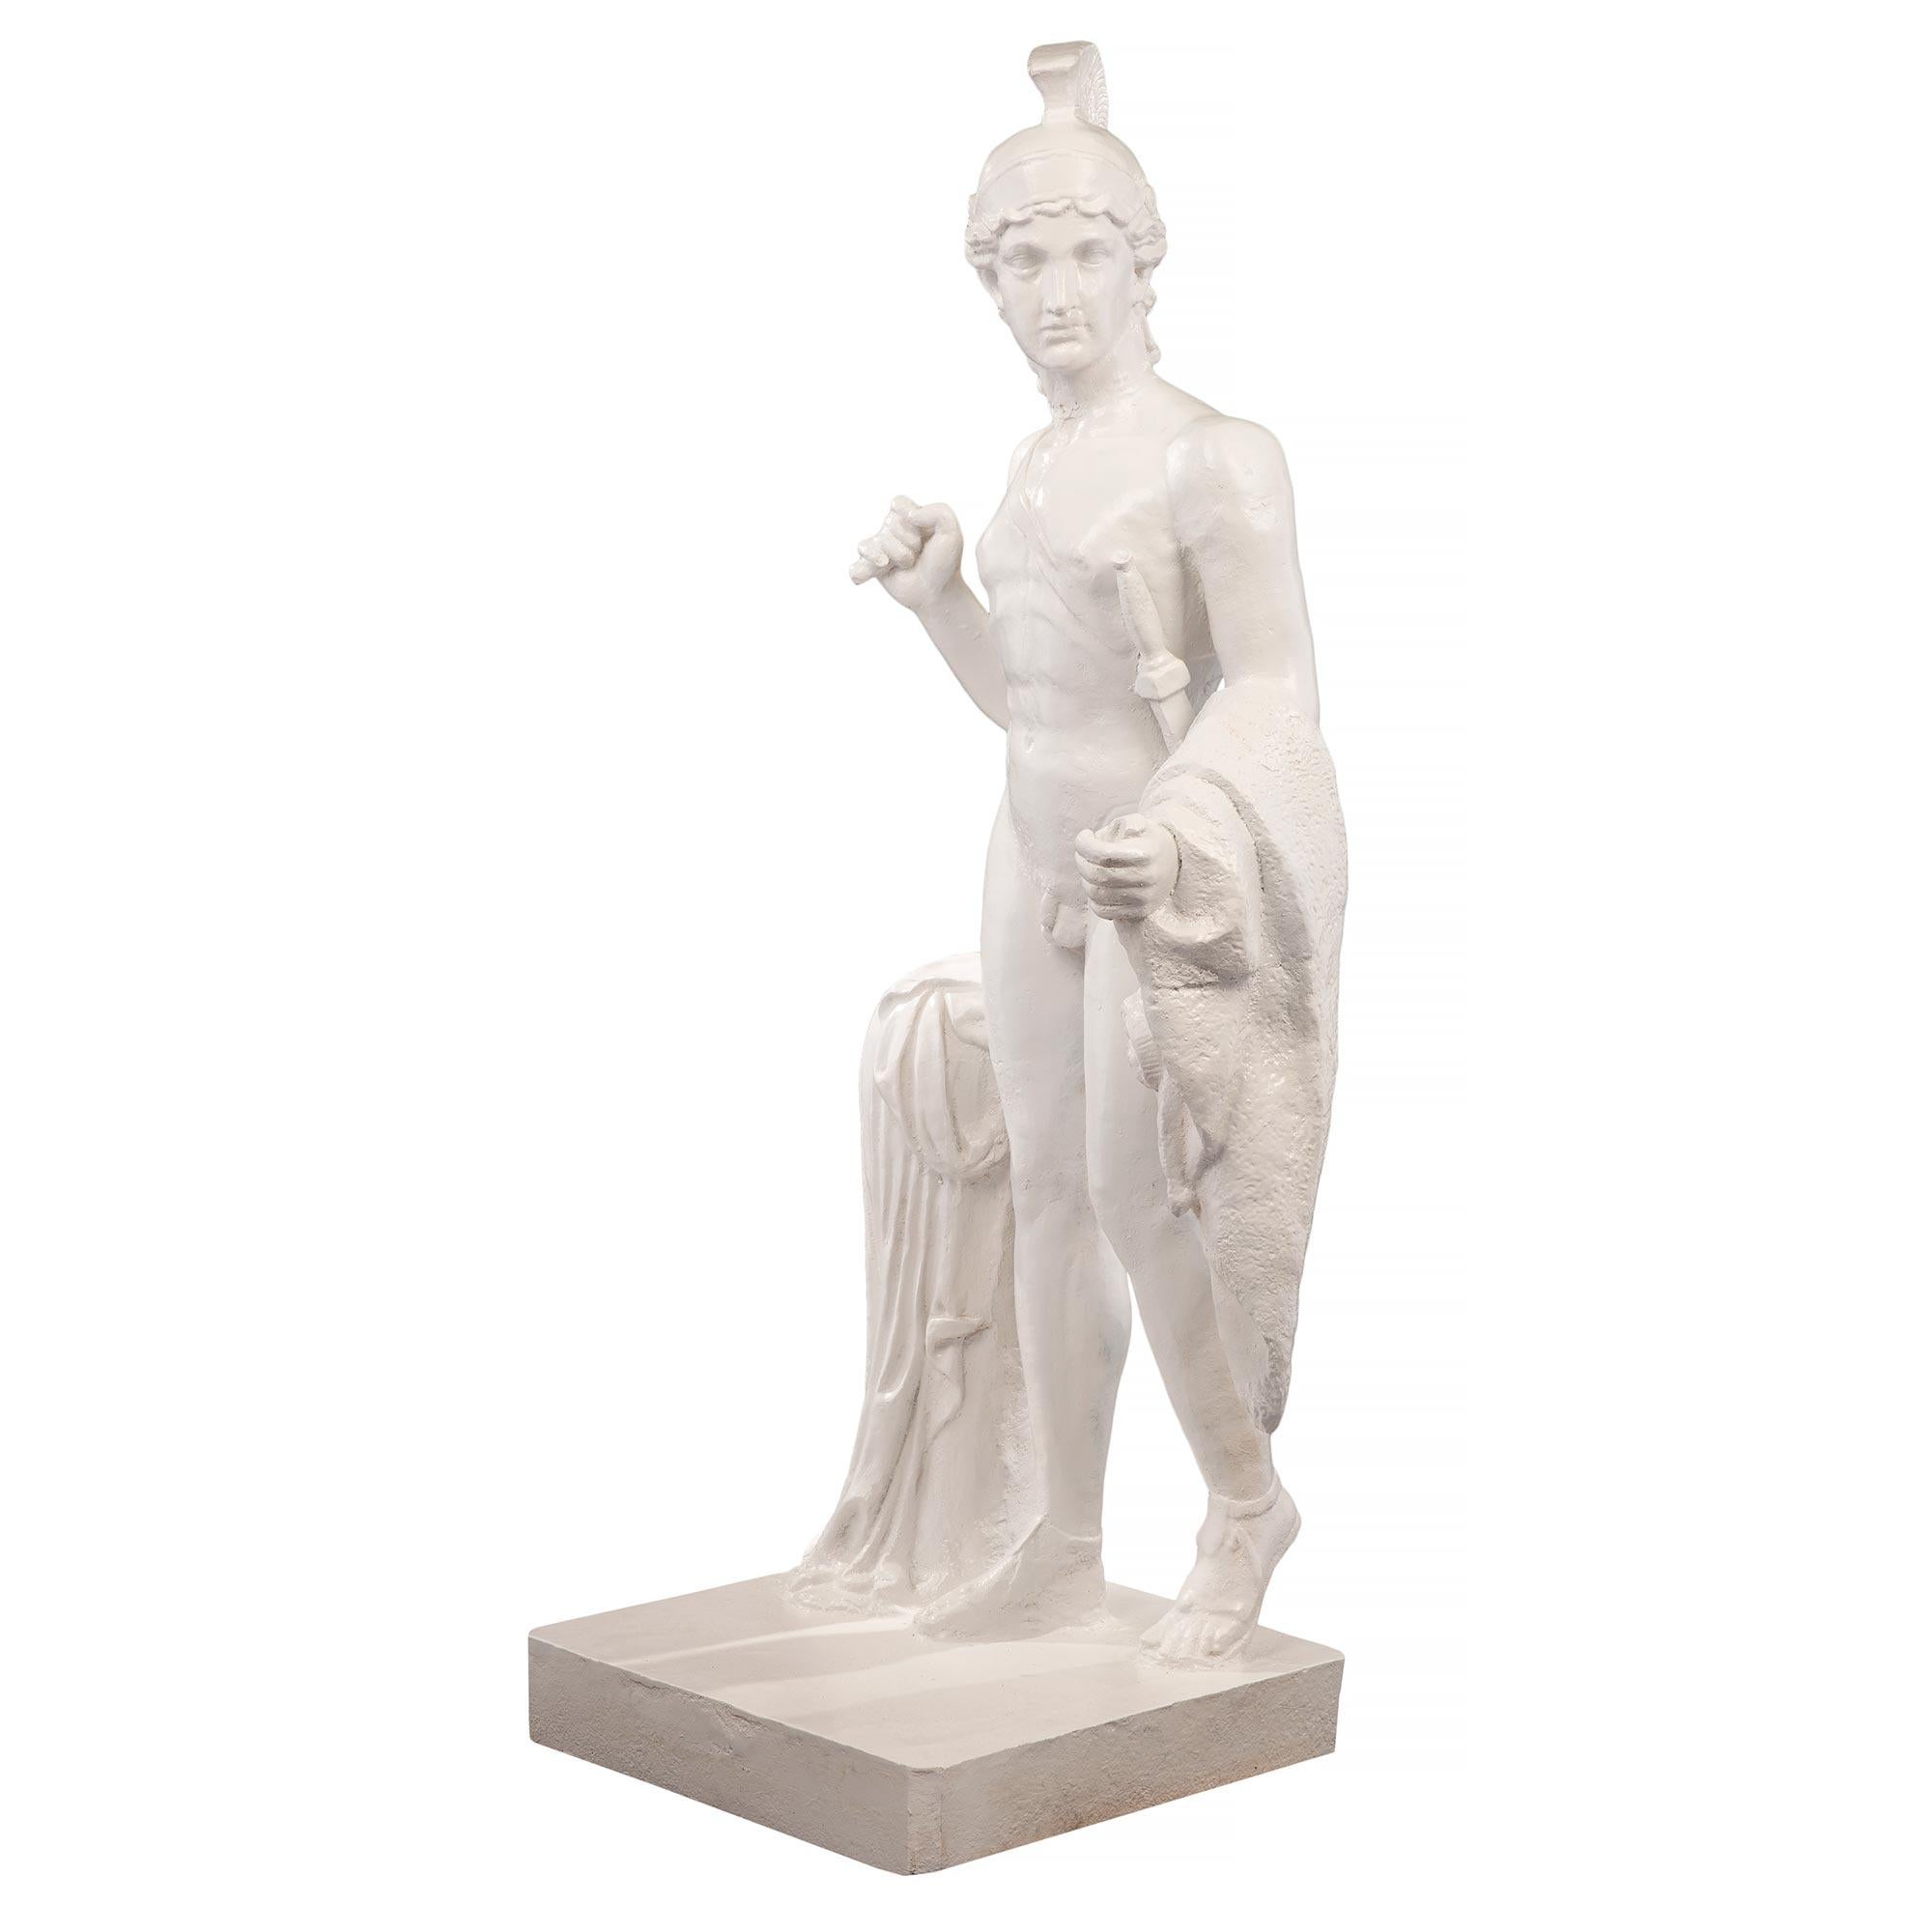 Statue en fonte du XIXe siècle représentant un jeune centurion. La statue est surélevée par une base carrée où il se tient à côté d'une souche d'arbre. Le beau personnage se tient debout, sa cape rehaussée d'un trophée à tête de bélier drapée sur